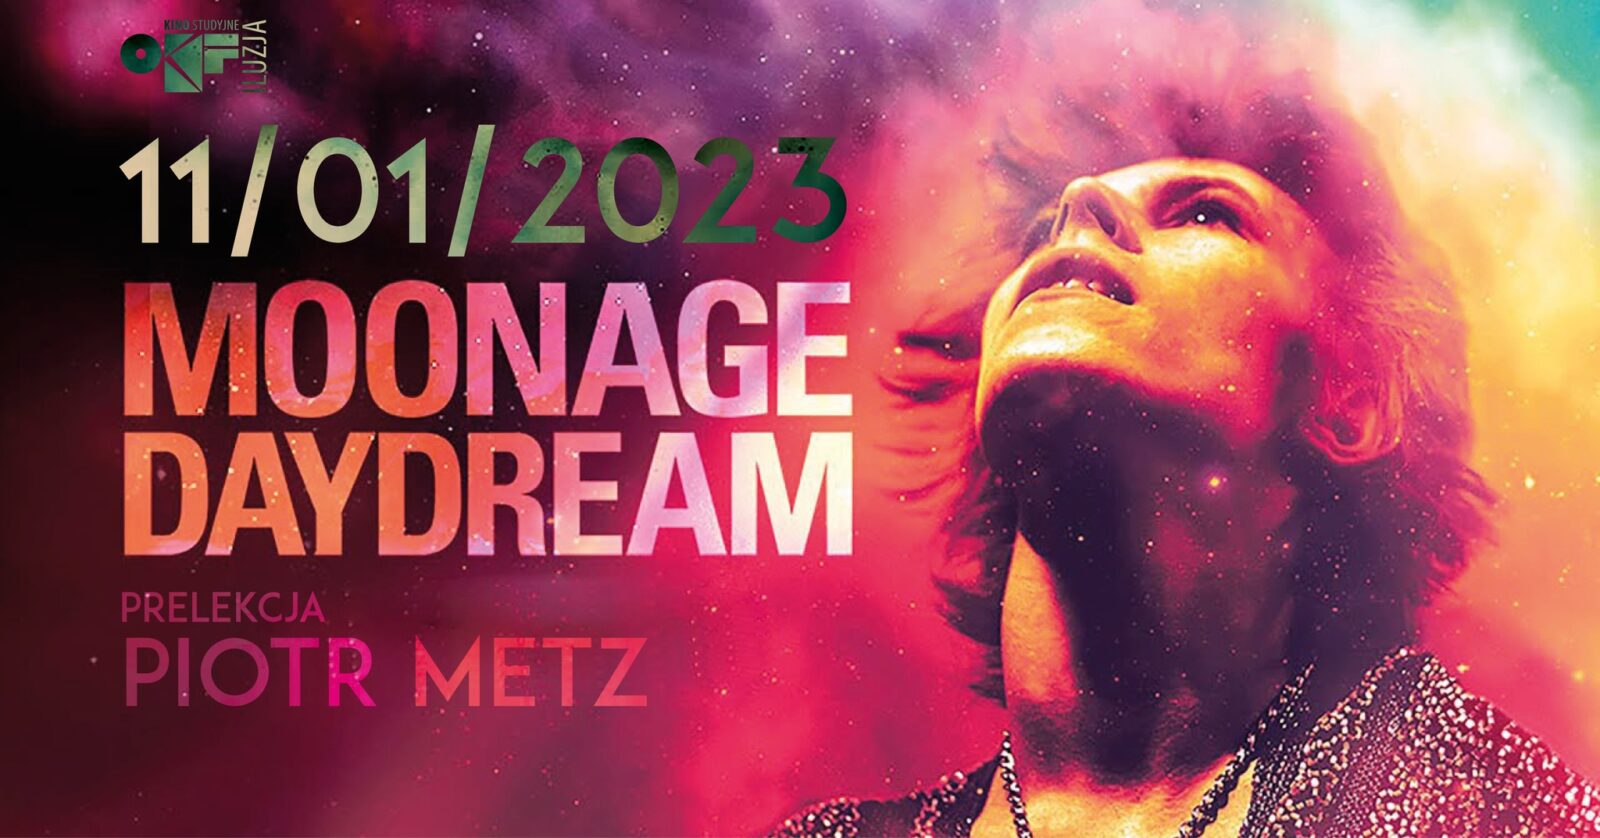 OKF. W Częstochowie odbędzie się pokaz specjalny filmu "Moonage Daydream" z udziałem Piotra Metza 1